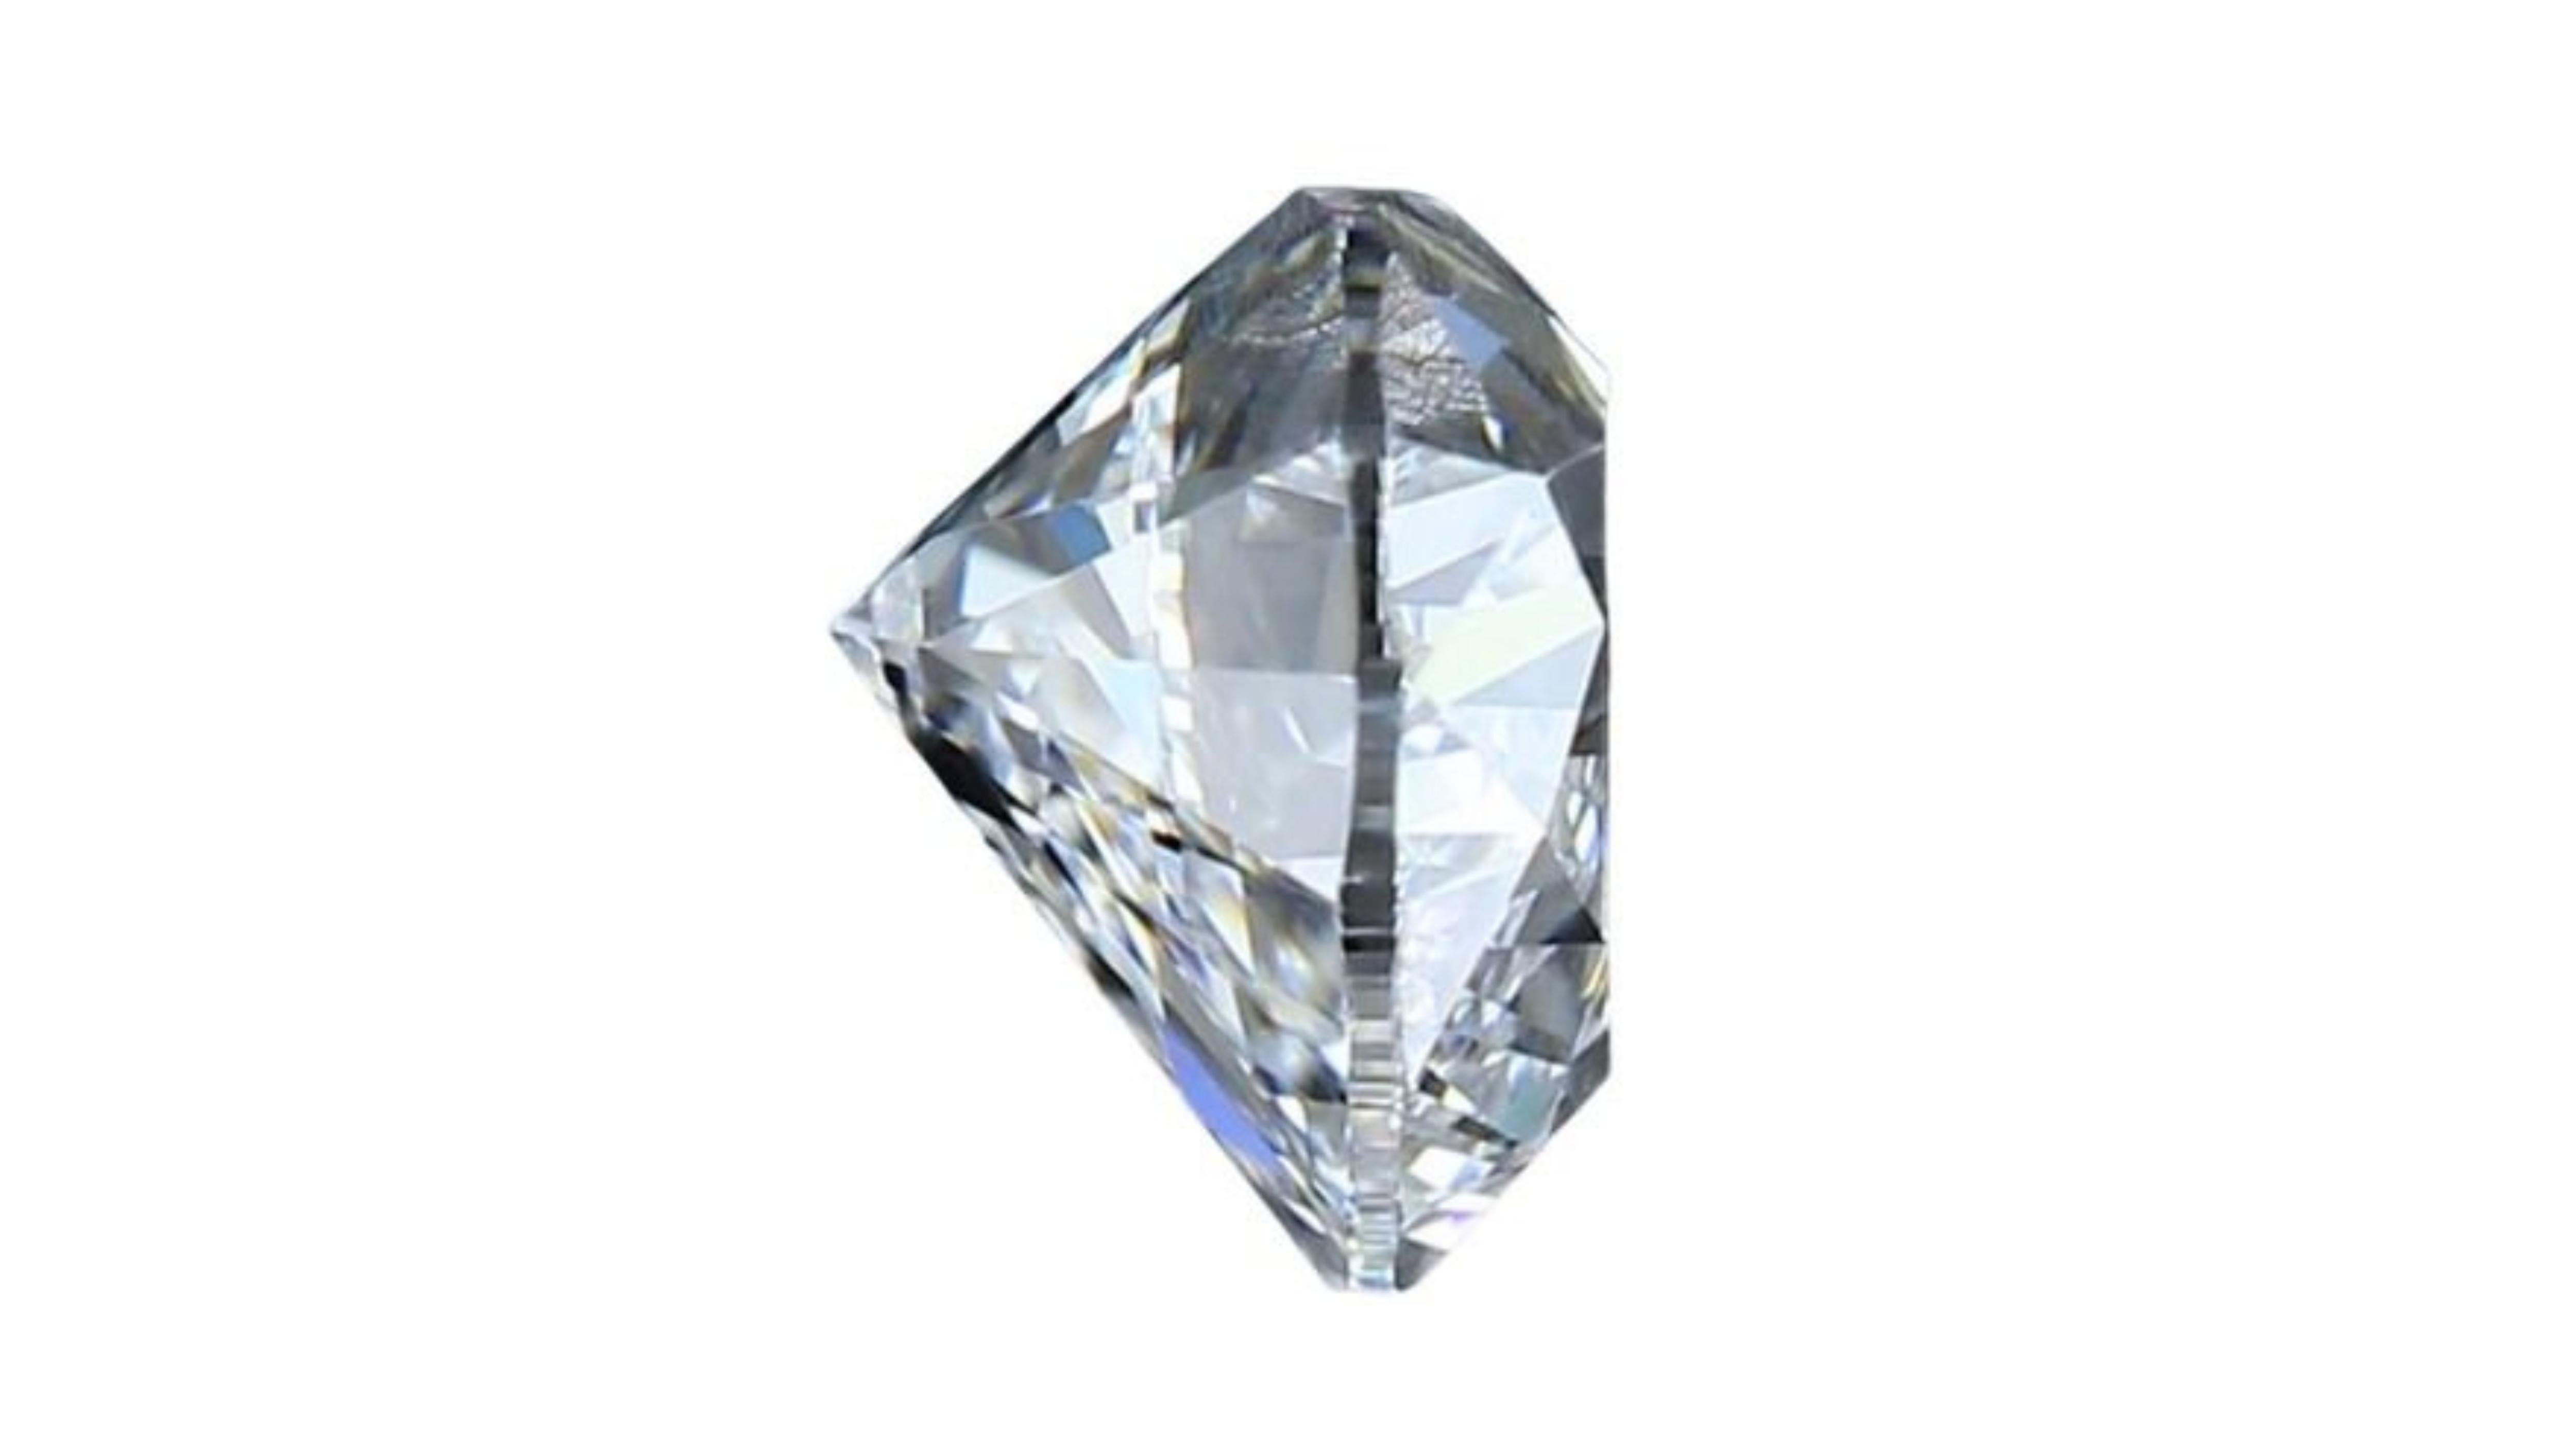 Dieser atemberaubende Diamant im Herzbrillantschliff ist ein seltener und wertvoller Edelstein. Er ist perfekt geschliffen und poliert, um seine Brillanz und sein Funkeln zu maximieren. Die Farbe ist D, der höchstmögliche Grad, und die Reinheit ist